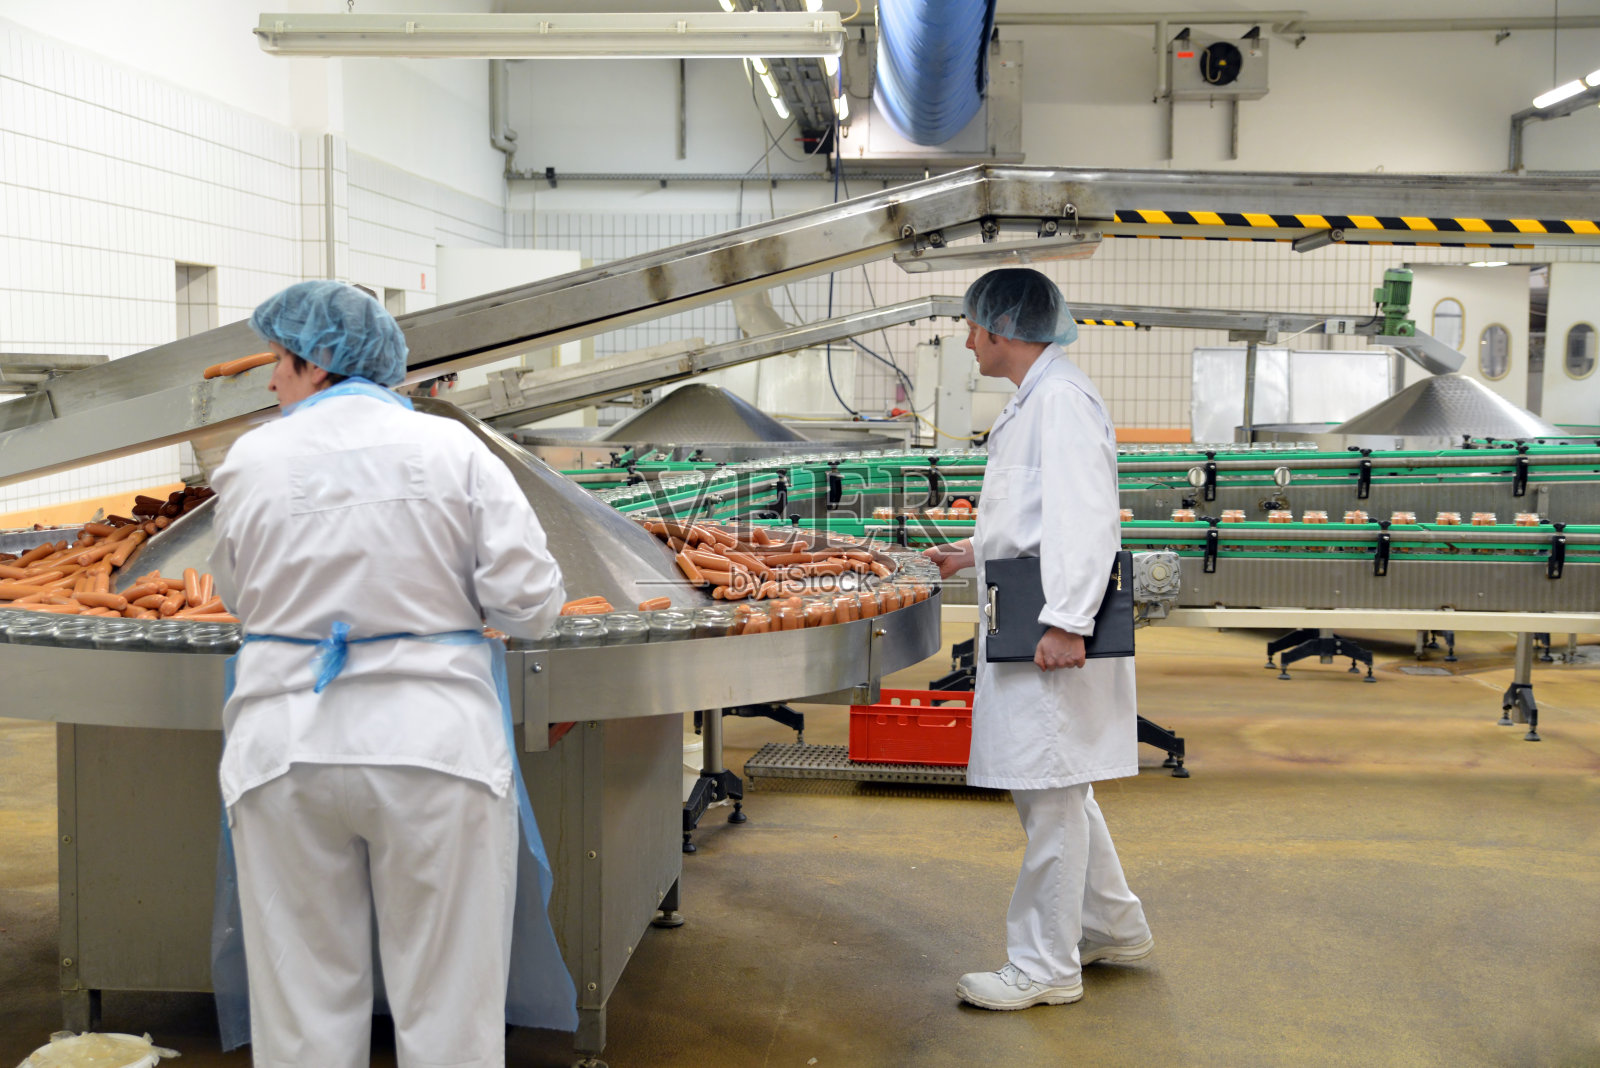 食品工业的工作场所——生产香肠的屠宰厂——妇女在装配线上工作照片摄影图片